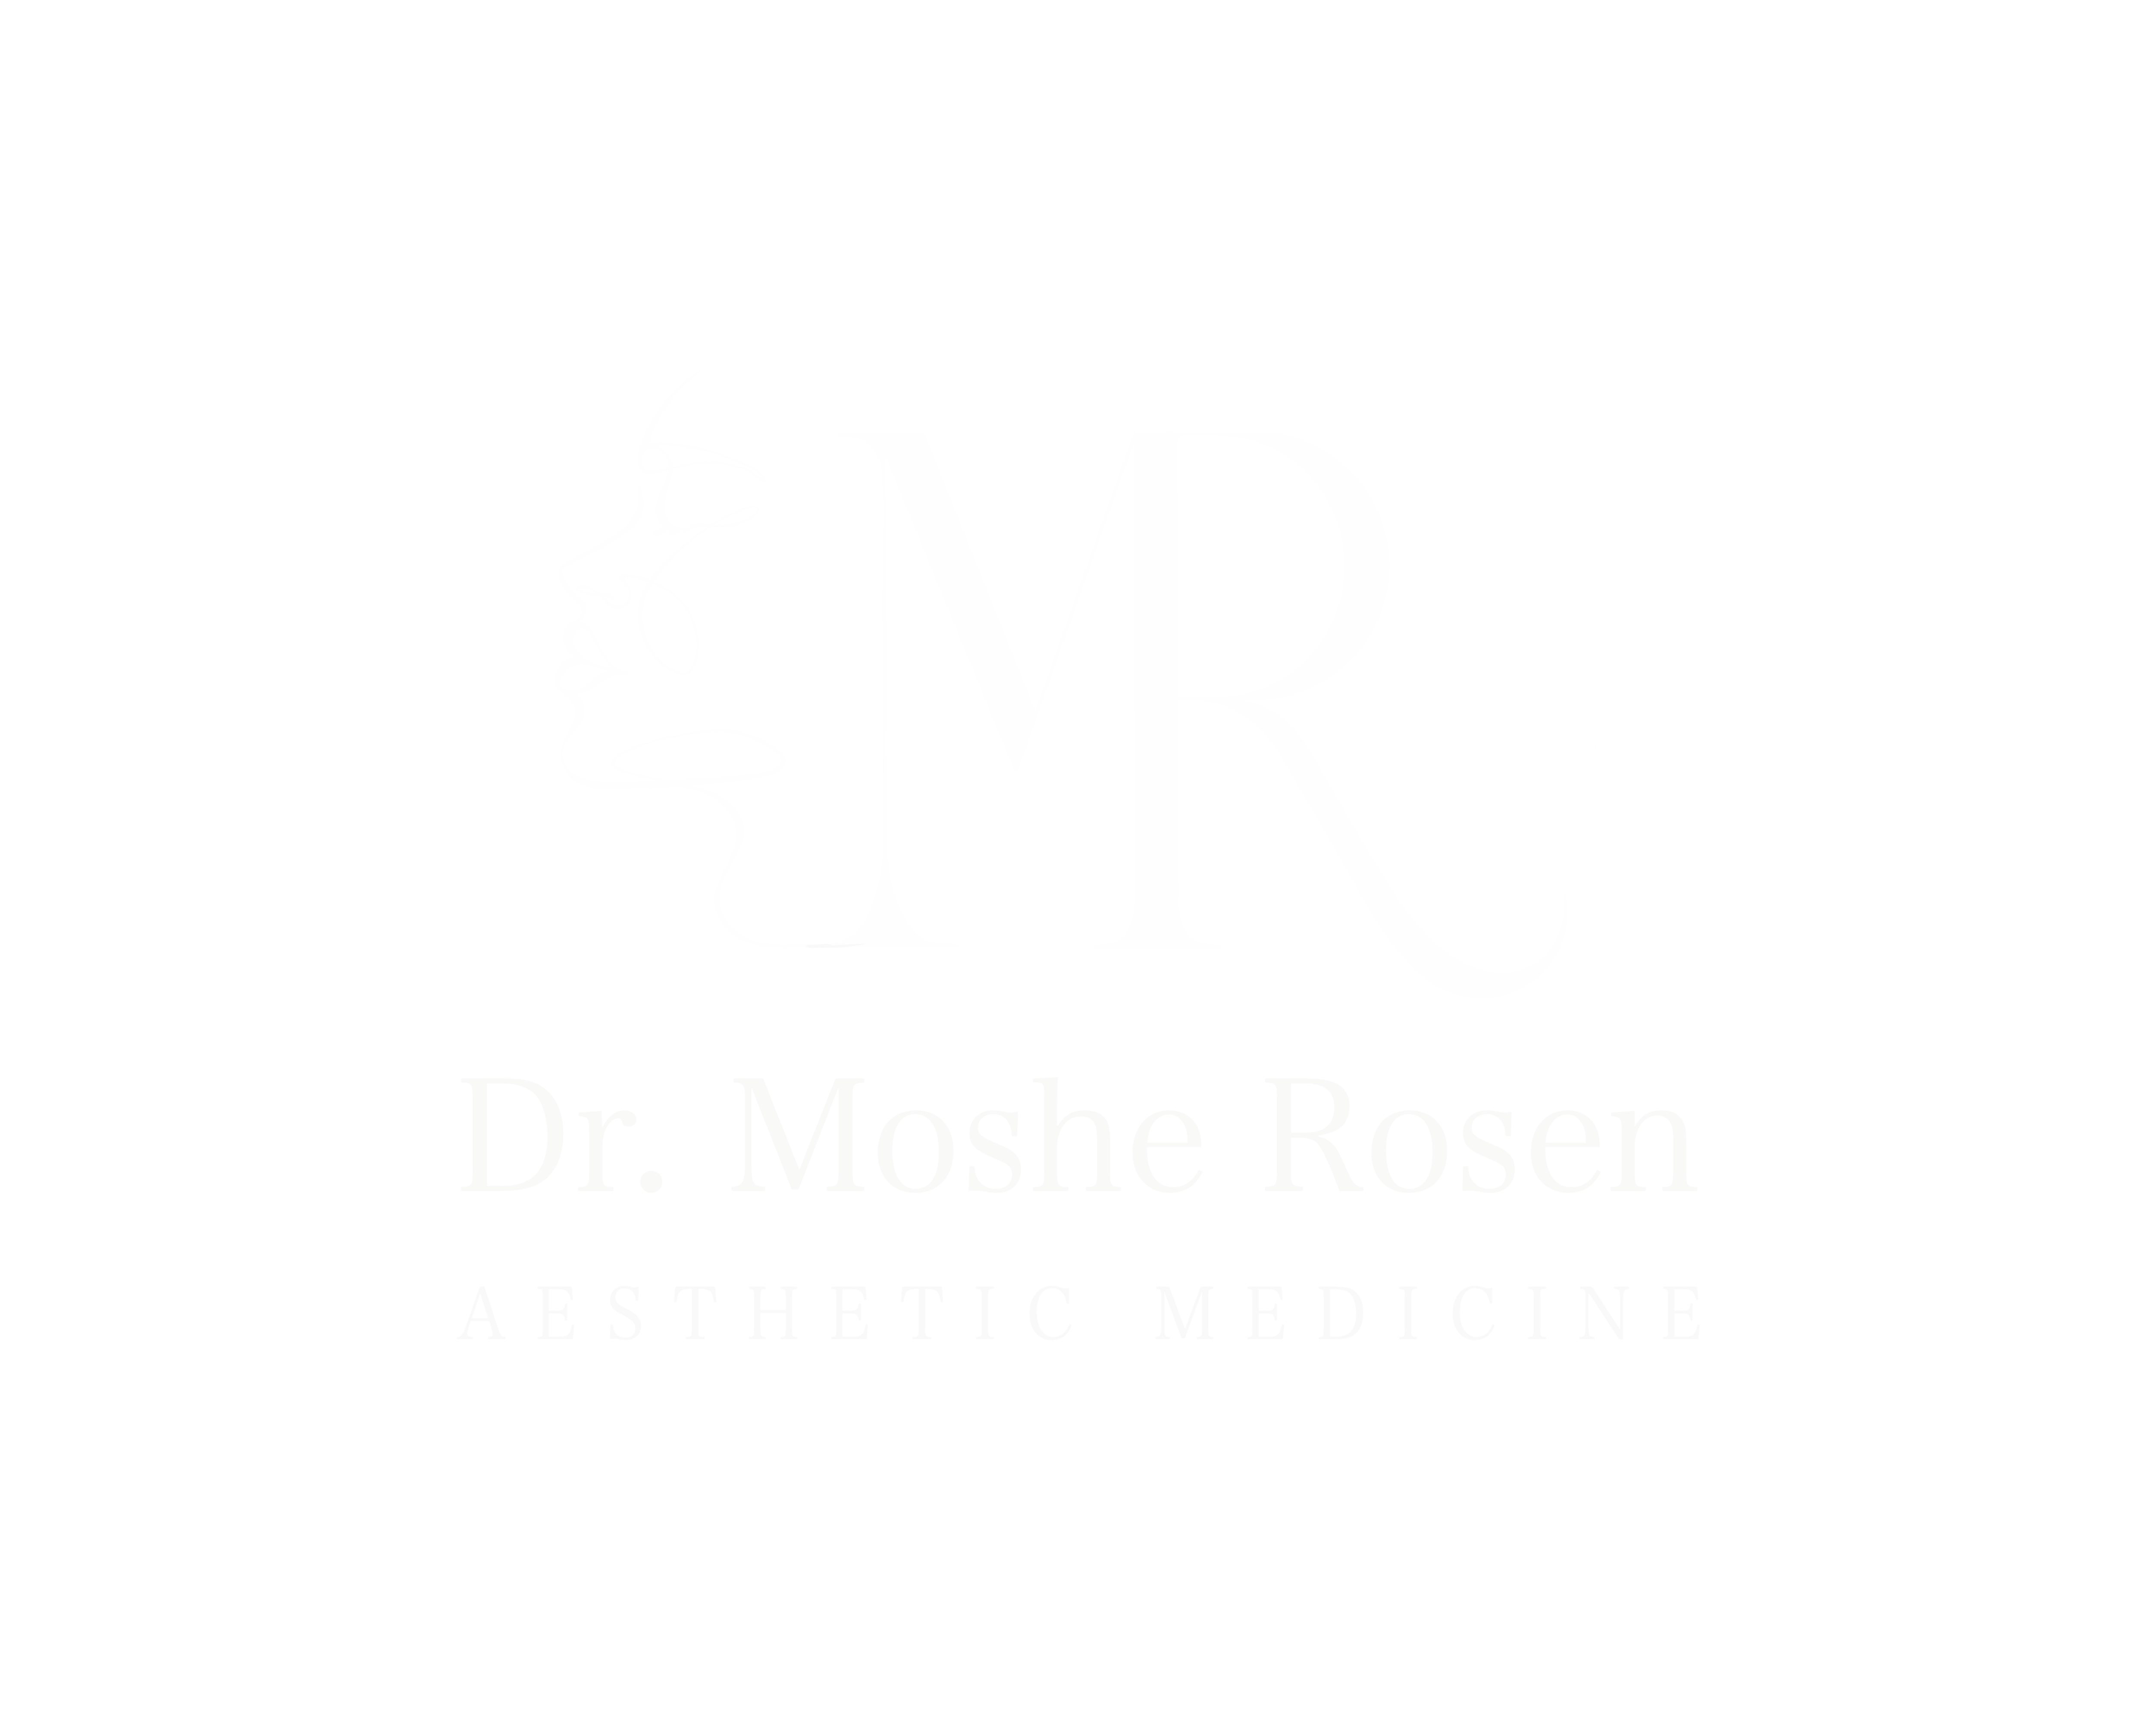 Dr. Moshe Rosen